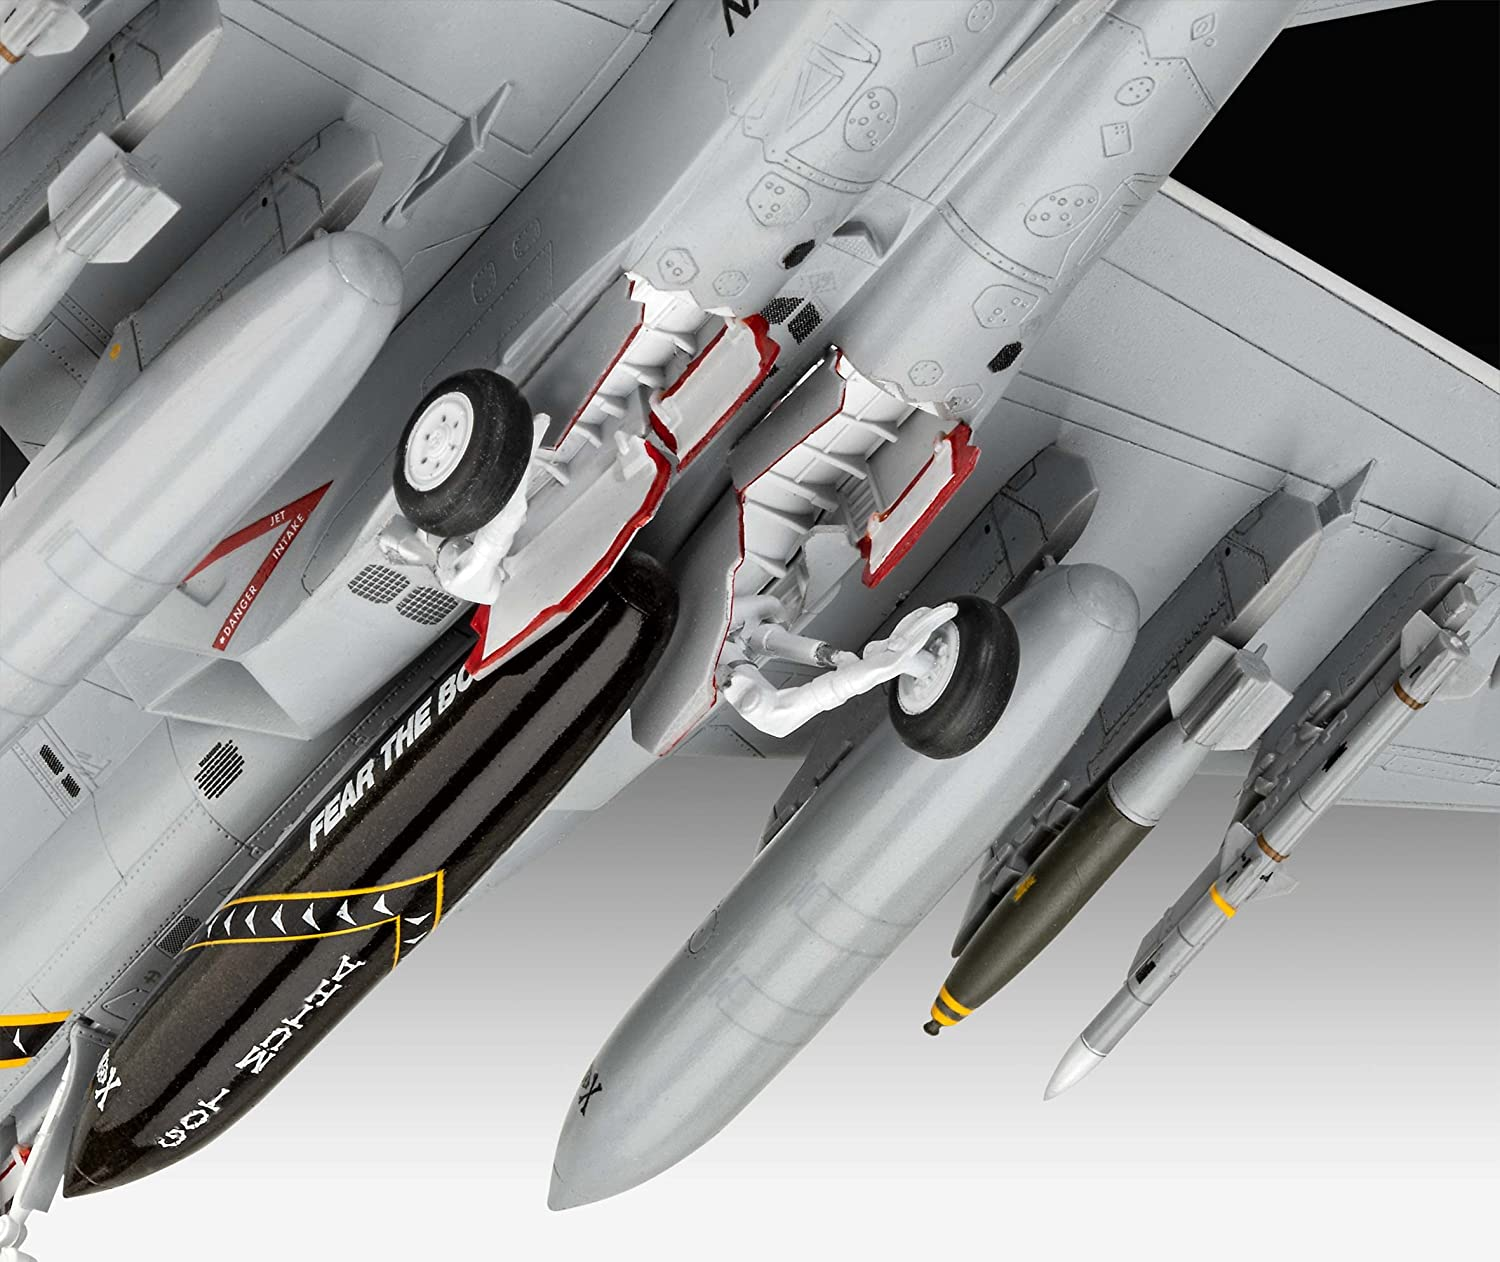 REVELL F/A-18F Super Hornet Modellbau Modell